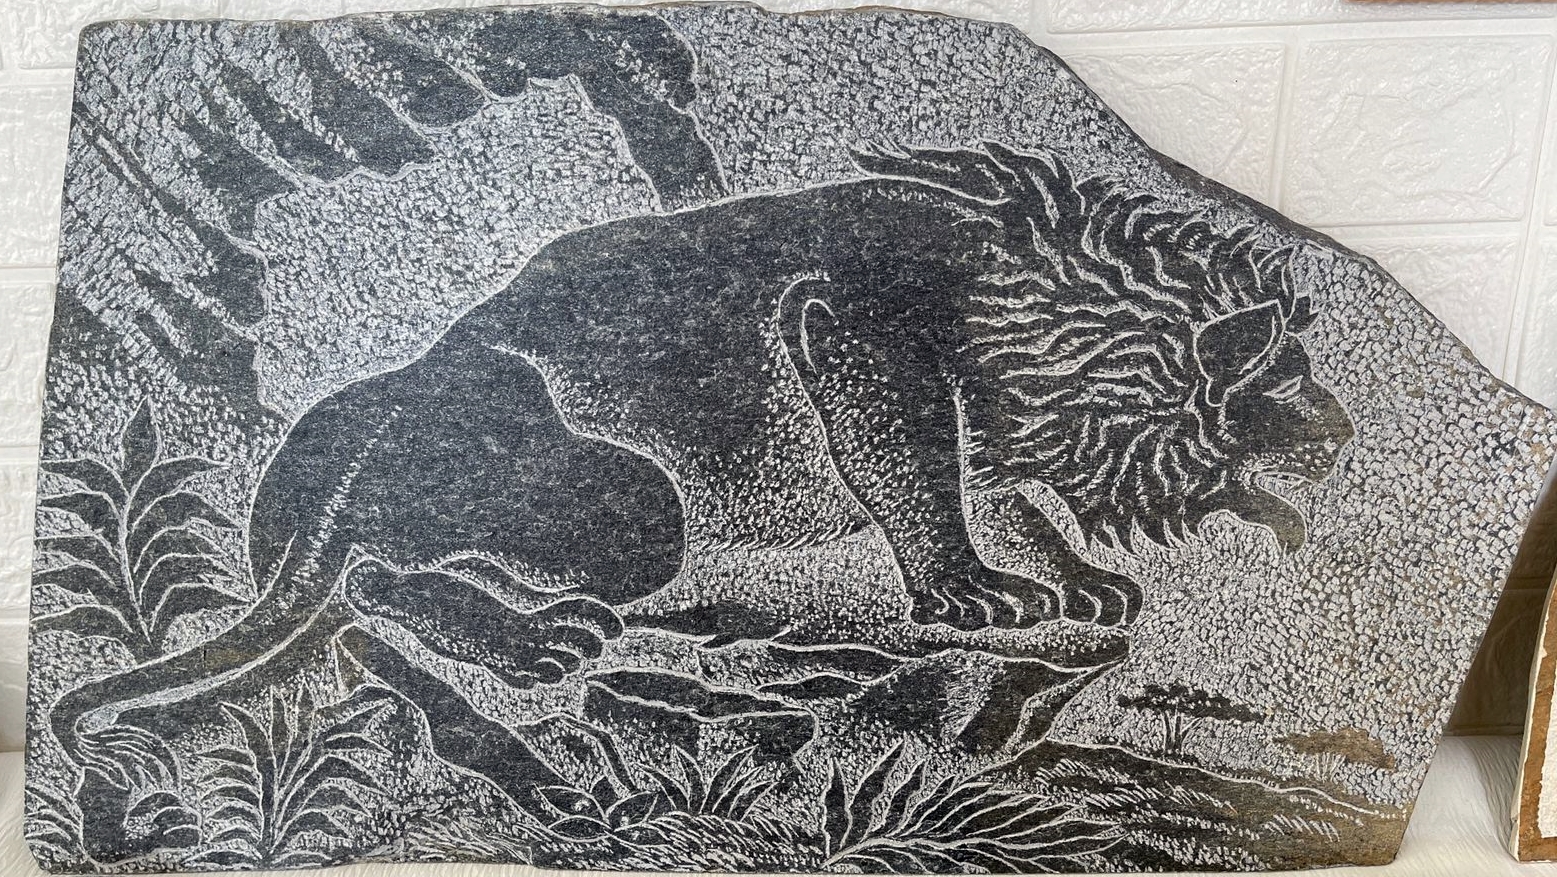 Luani i Butrintit gdhendur në gur, punim nga Agur Kapo